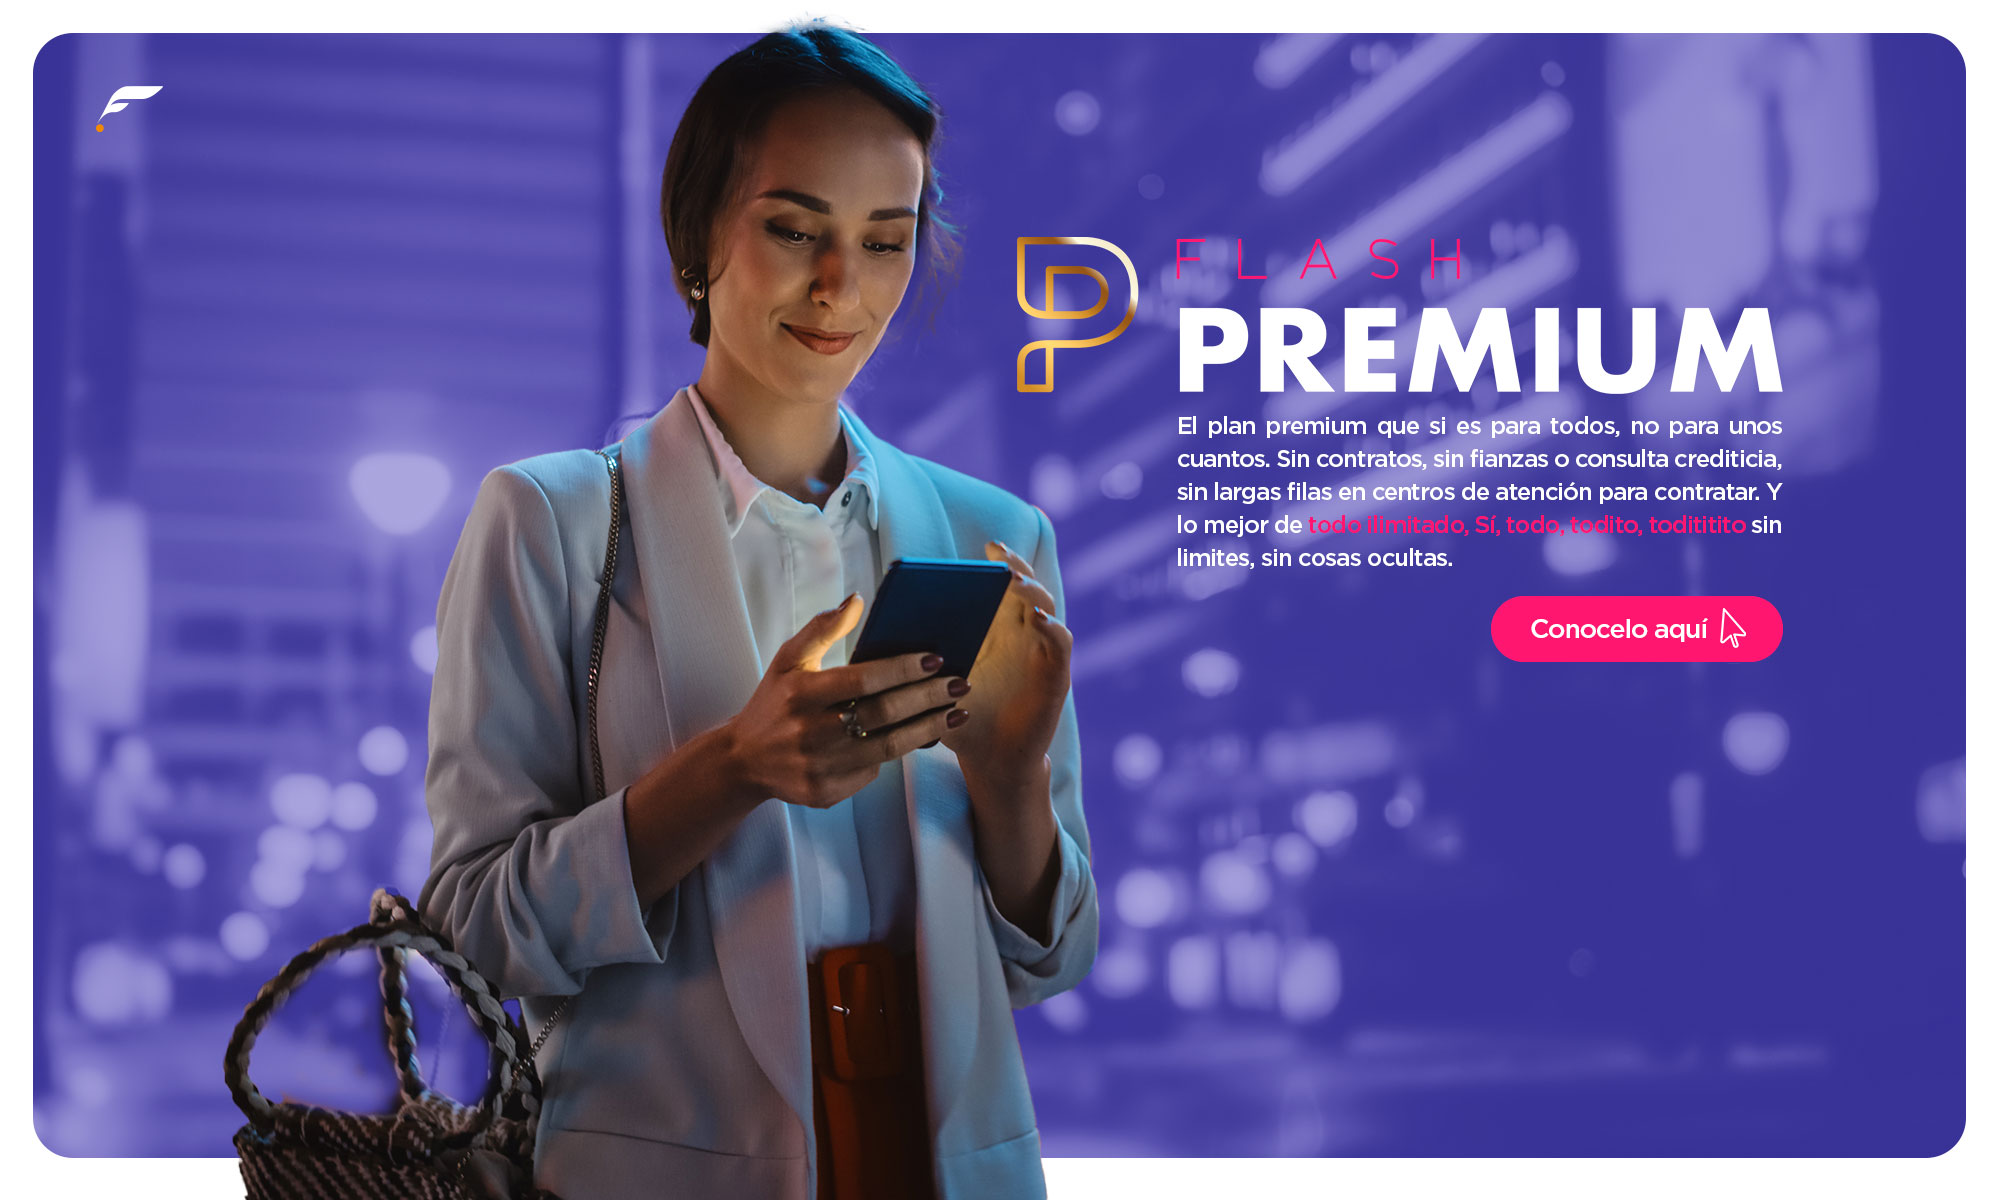 Nuevo Plan Flash Premium. Conoce más detalles dando clic aquí